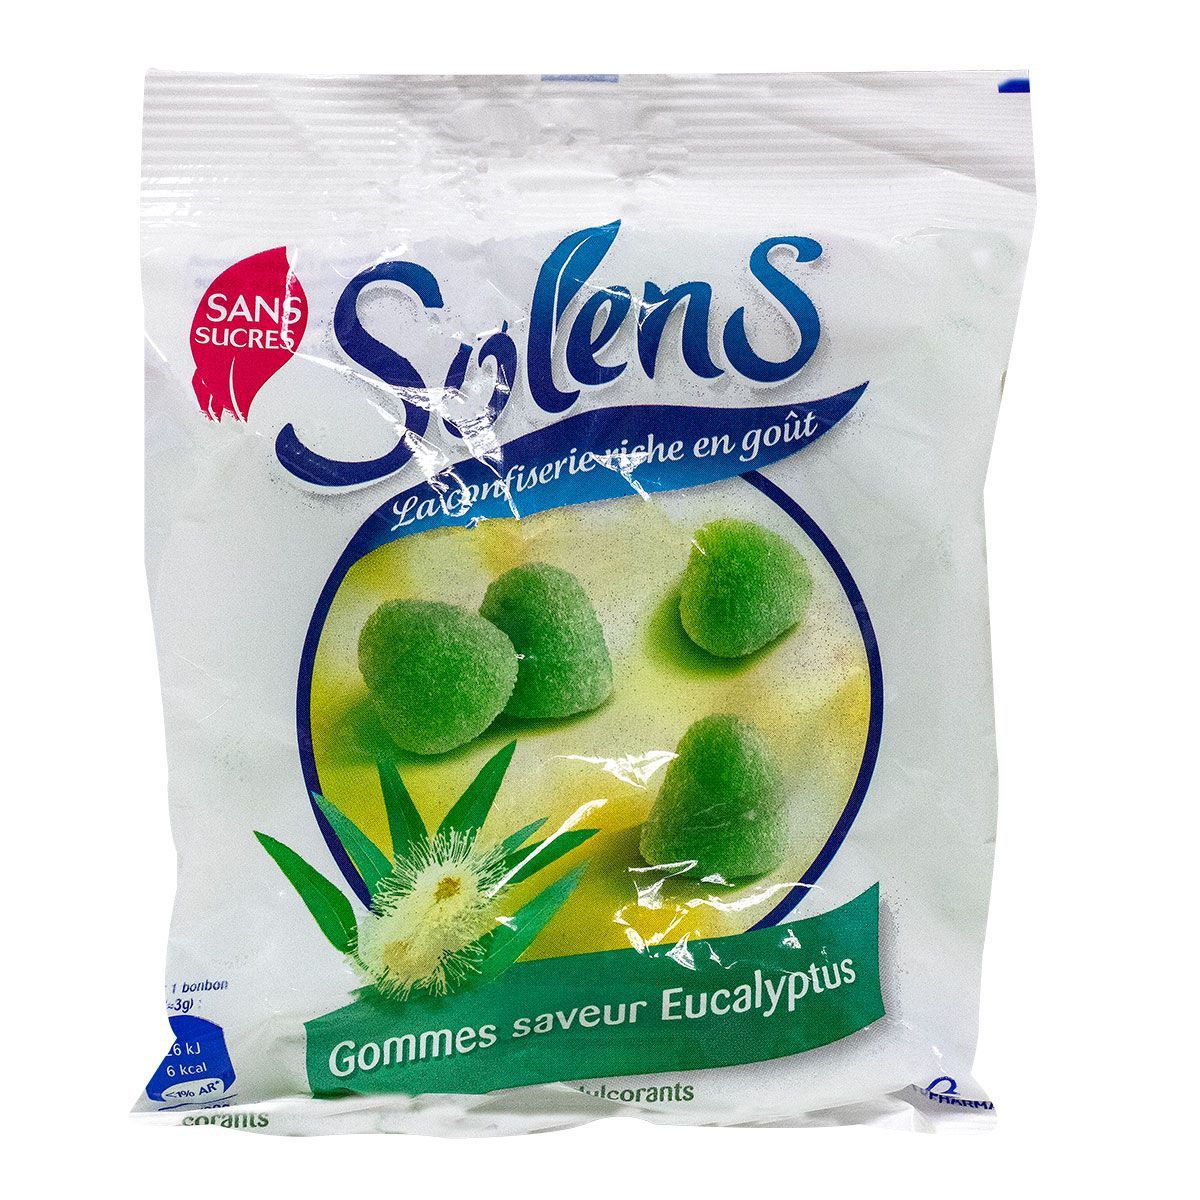 SOLENS - Bonbons Saveur Menthe-eucalyptus Sans Sucres - Sachet 100g